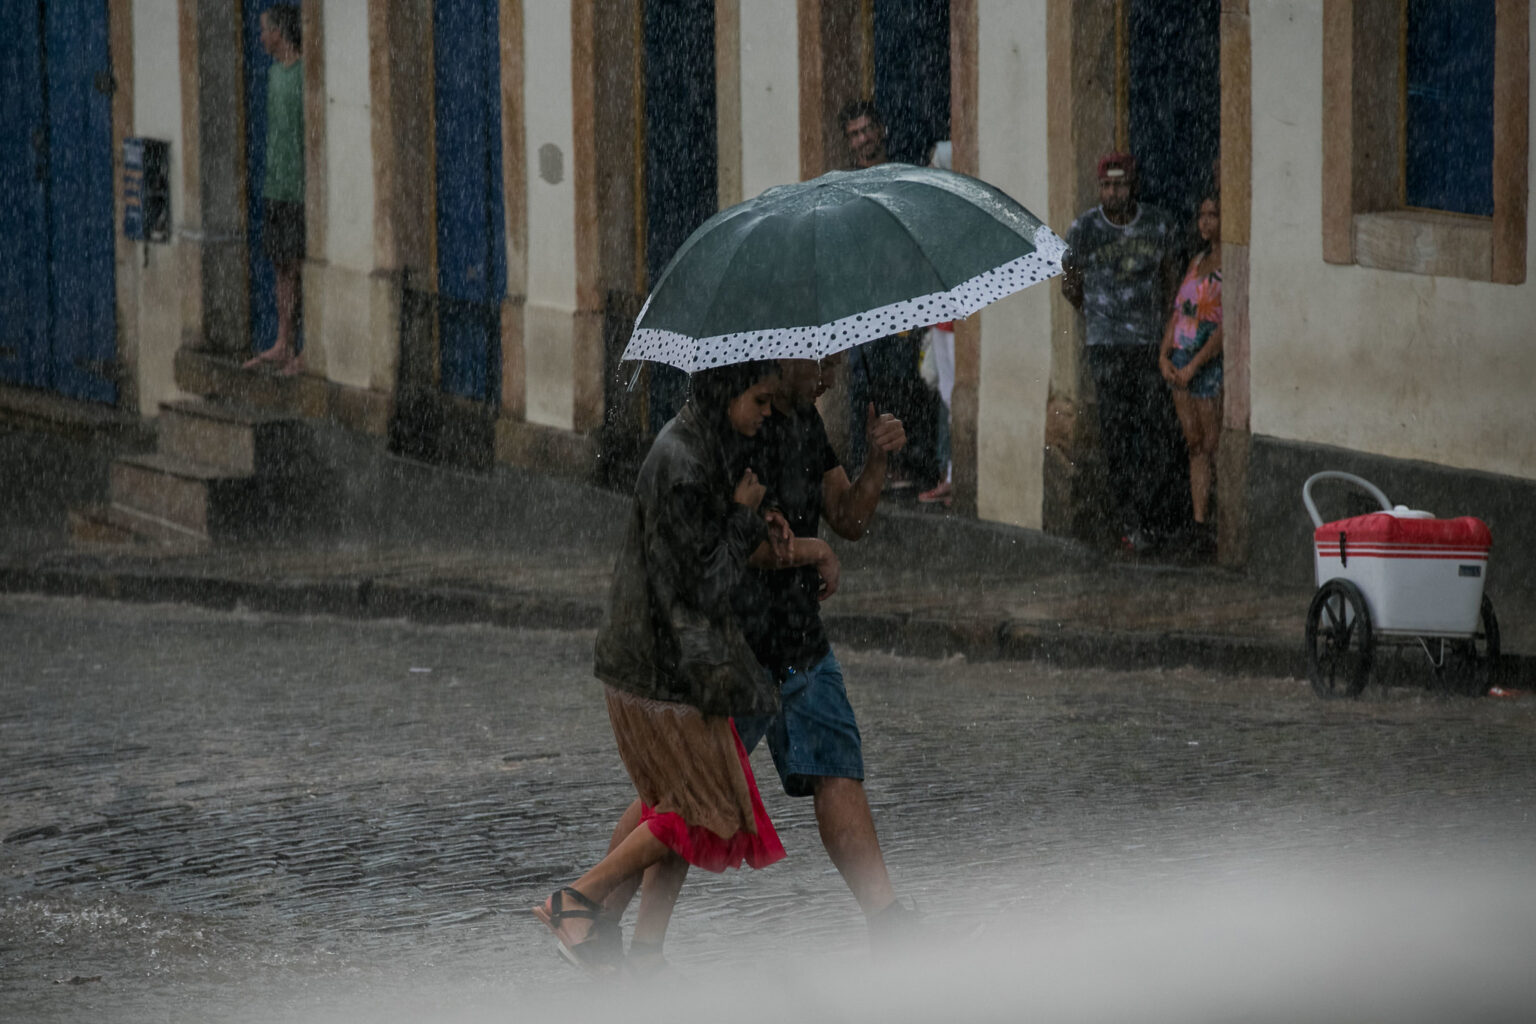 Semana de véspera de Natal será chuvosa em Ouro Preto, aponta previsão do tempo